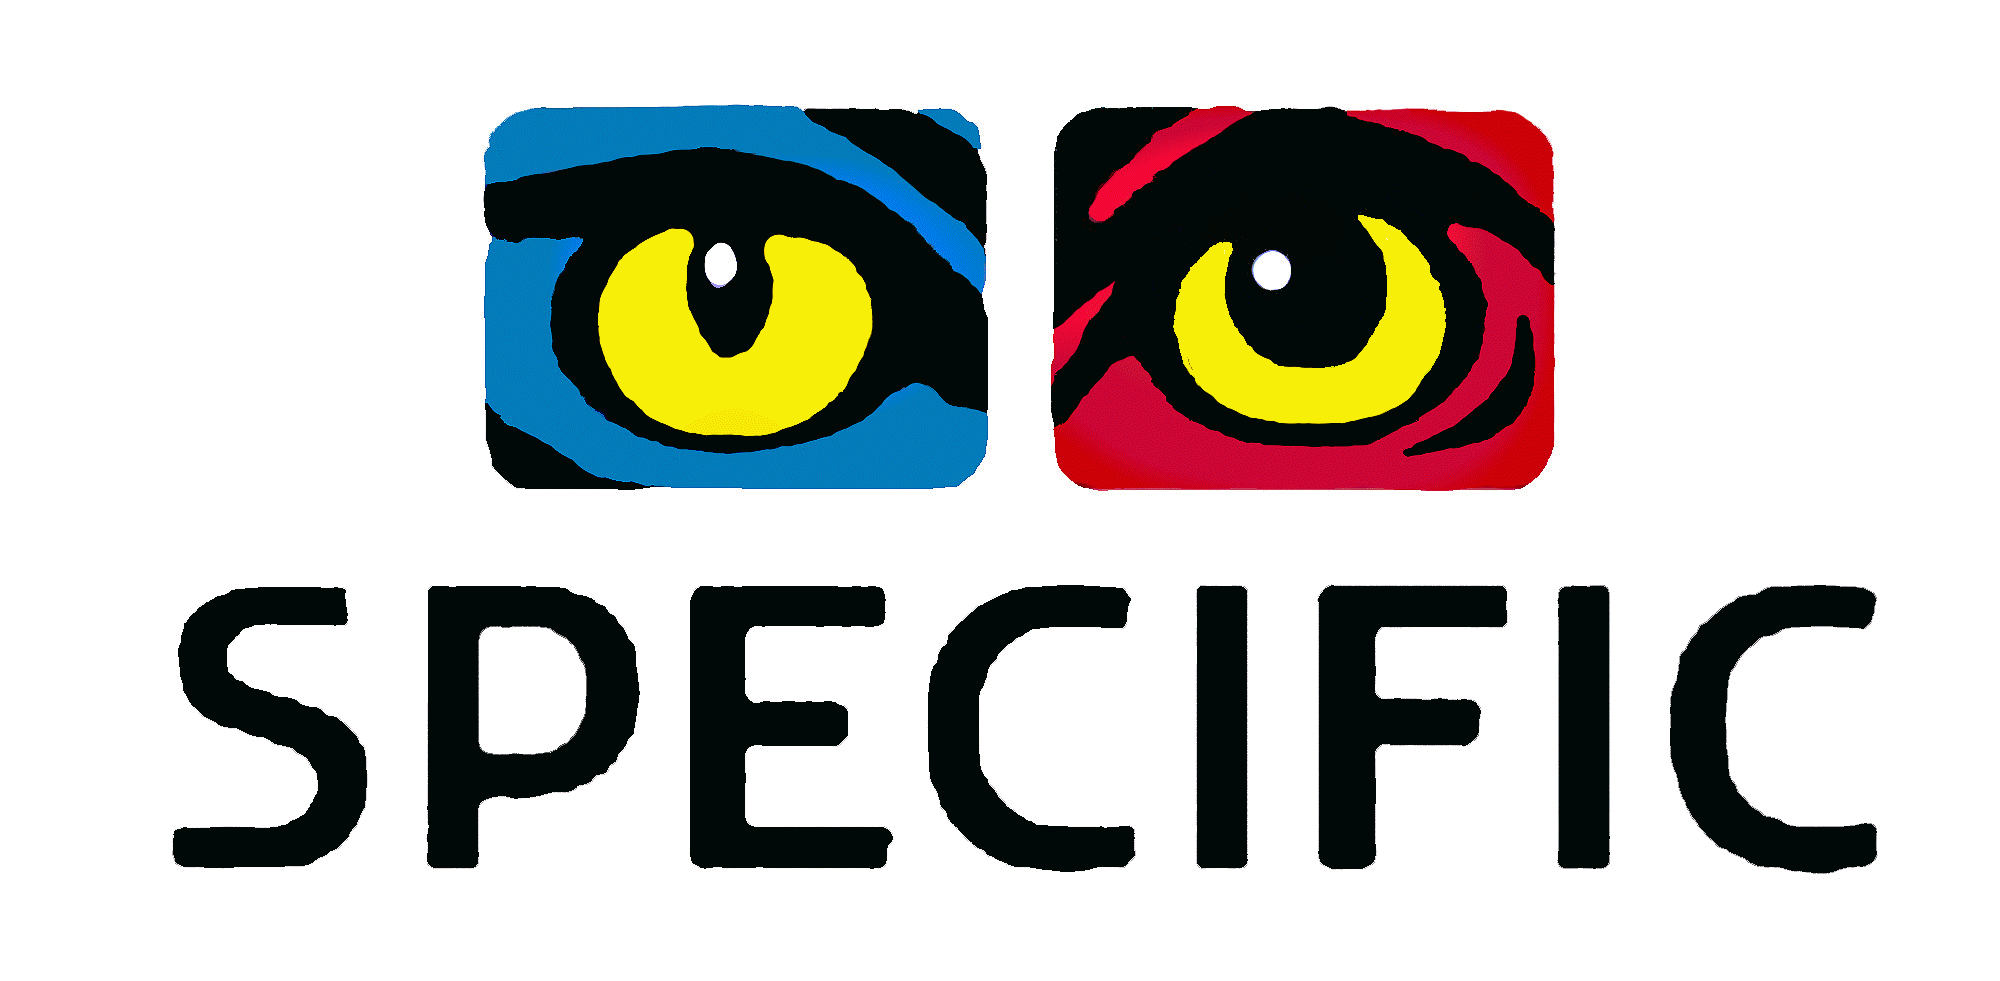 Лого specific. Logo specifics. Specific group